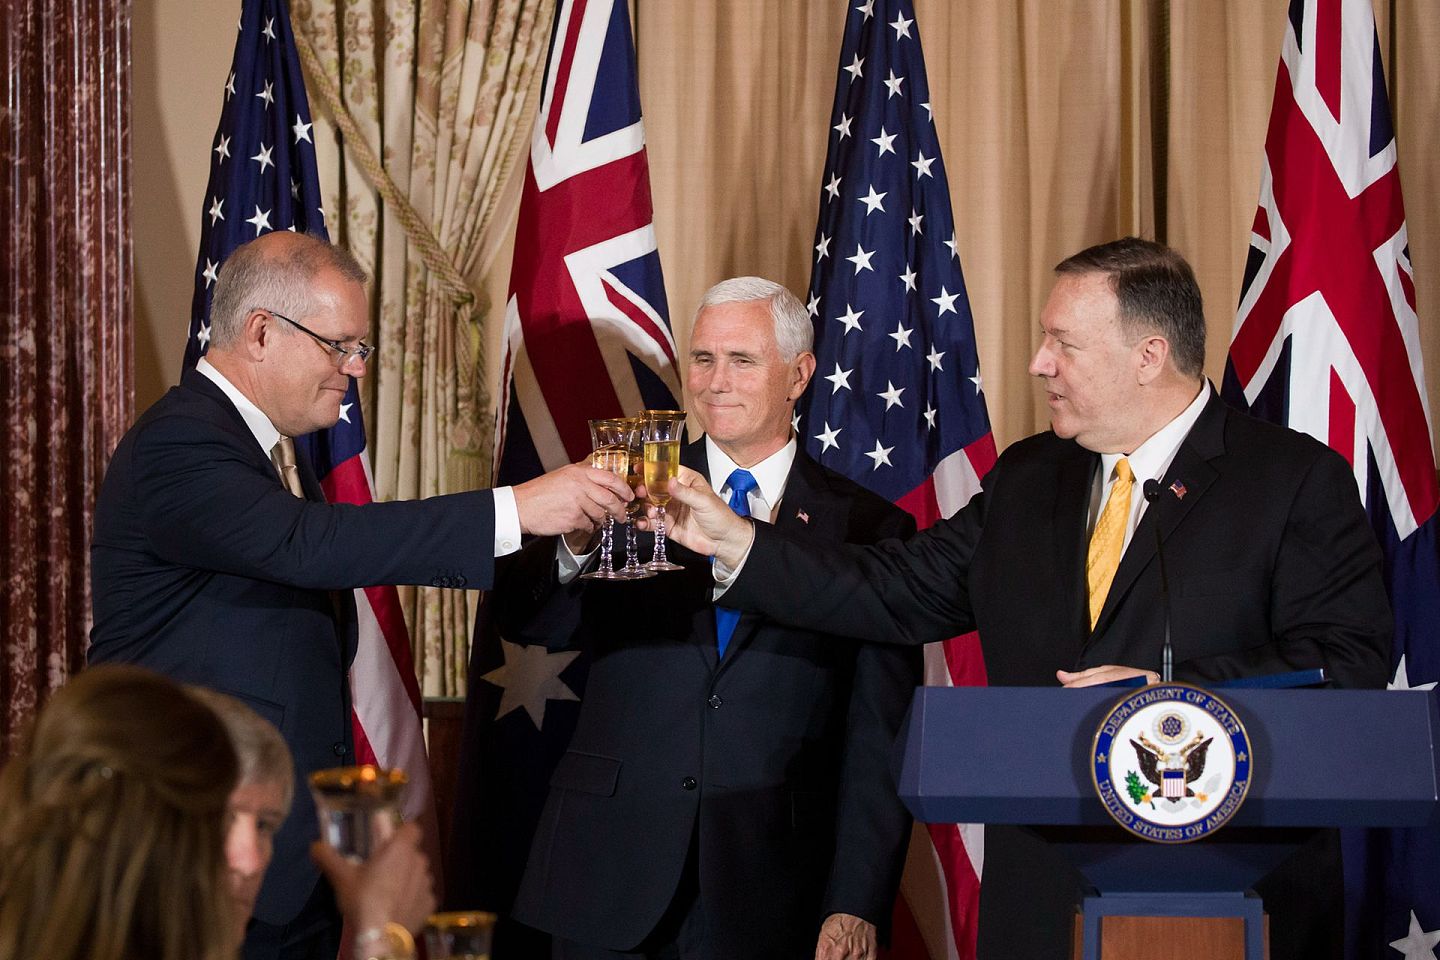 莫里森（左）与彭斯、蓬佩奥（右）等人推杯换盏，关系亲密，在价值观上相近，澳大利亚在疫情问题上的立场容易受美国的影响，发出不利中国的声音。希望澳大利亚这样的国家立刻在中美之间中立也不现实。（AP）